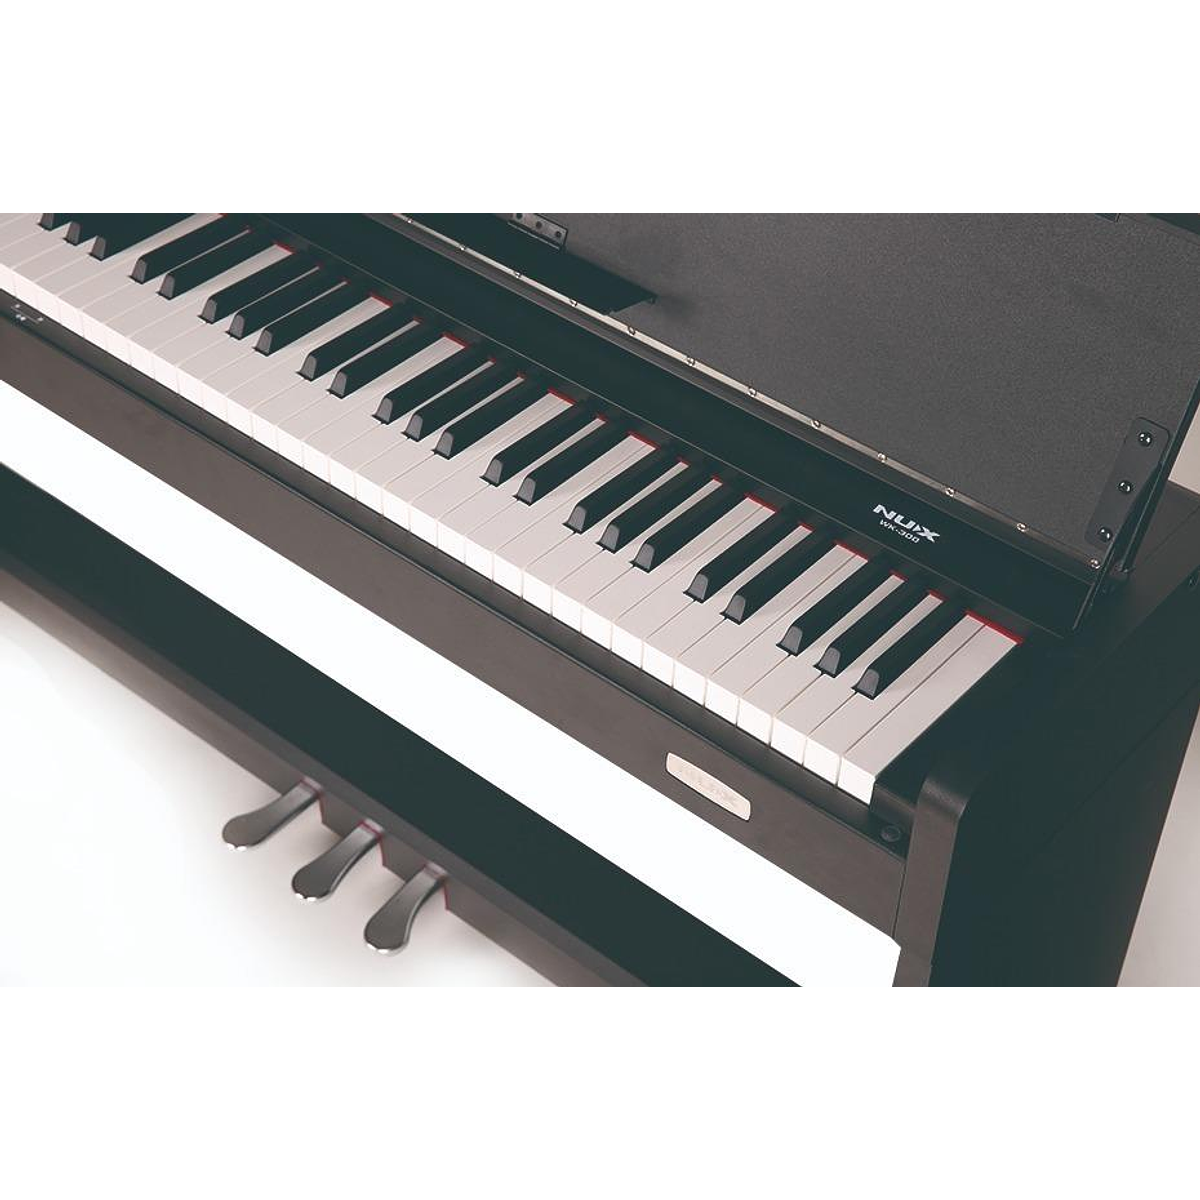 Piano Digital NUX WK-310: Elegancia y versatilidad